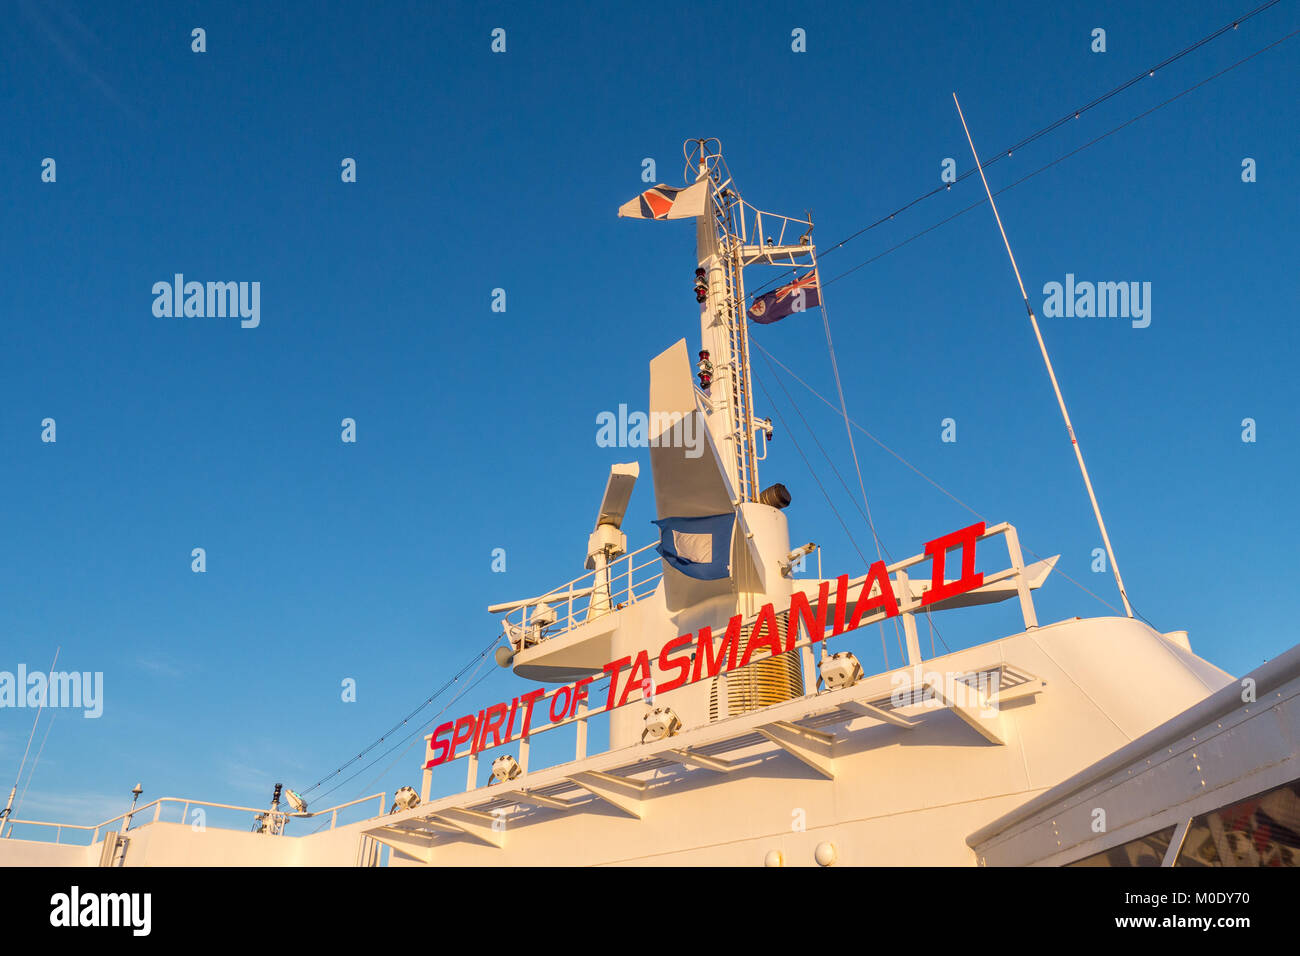 Exterieur Fotos des Geistes von Tasmanien II Name auf Brücke in roten Buchstaben mit blauem Himmel und windgepeitschten Fahnen und weiß Antennen und Radar. Stockfoto